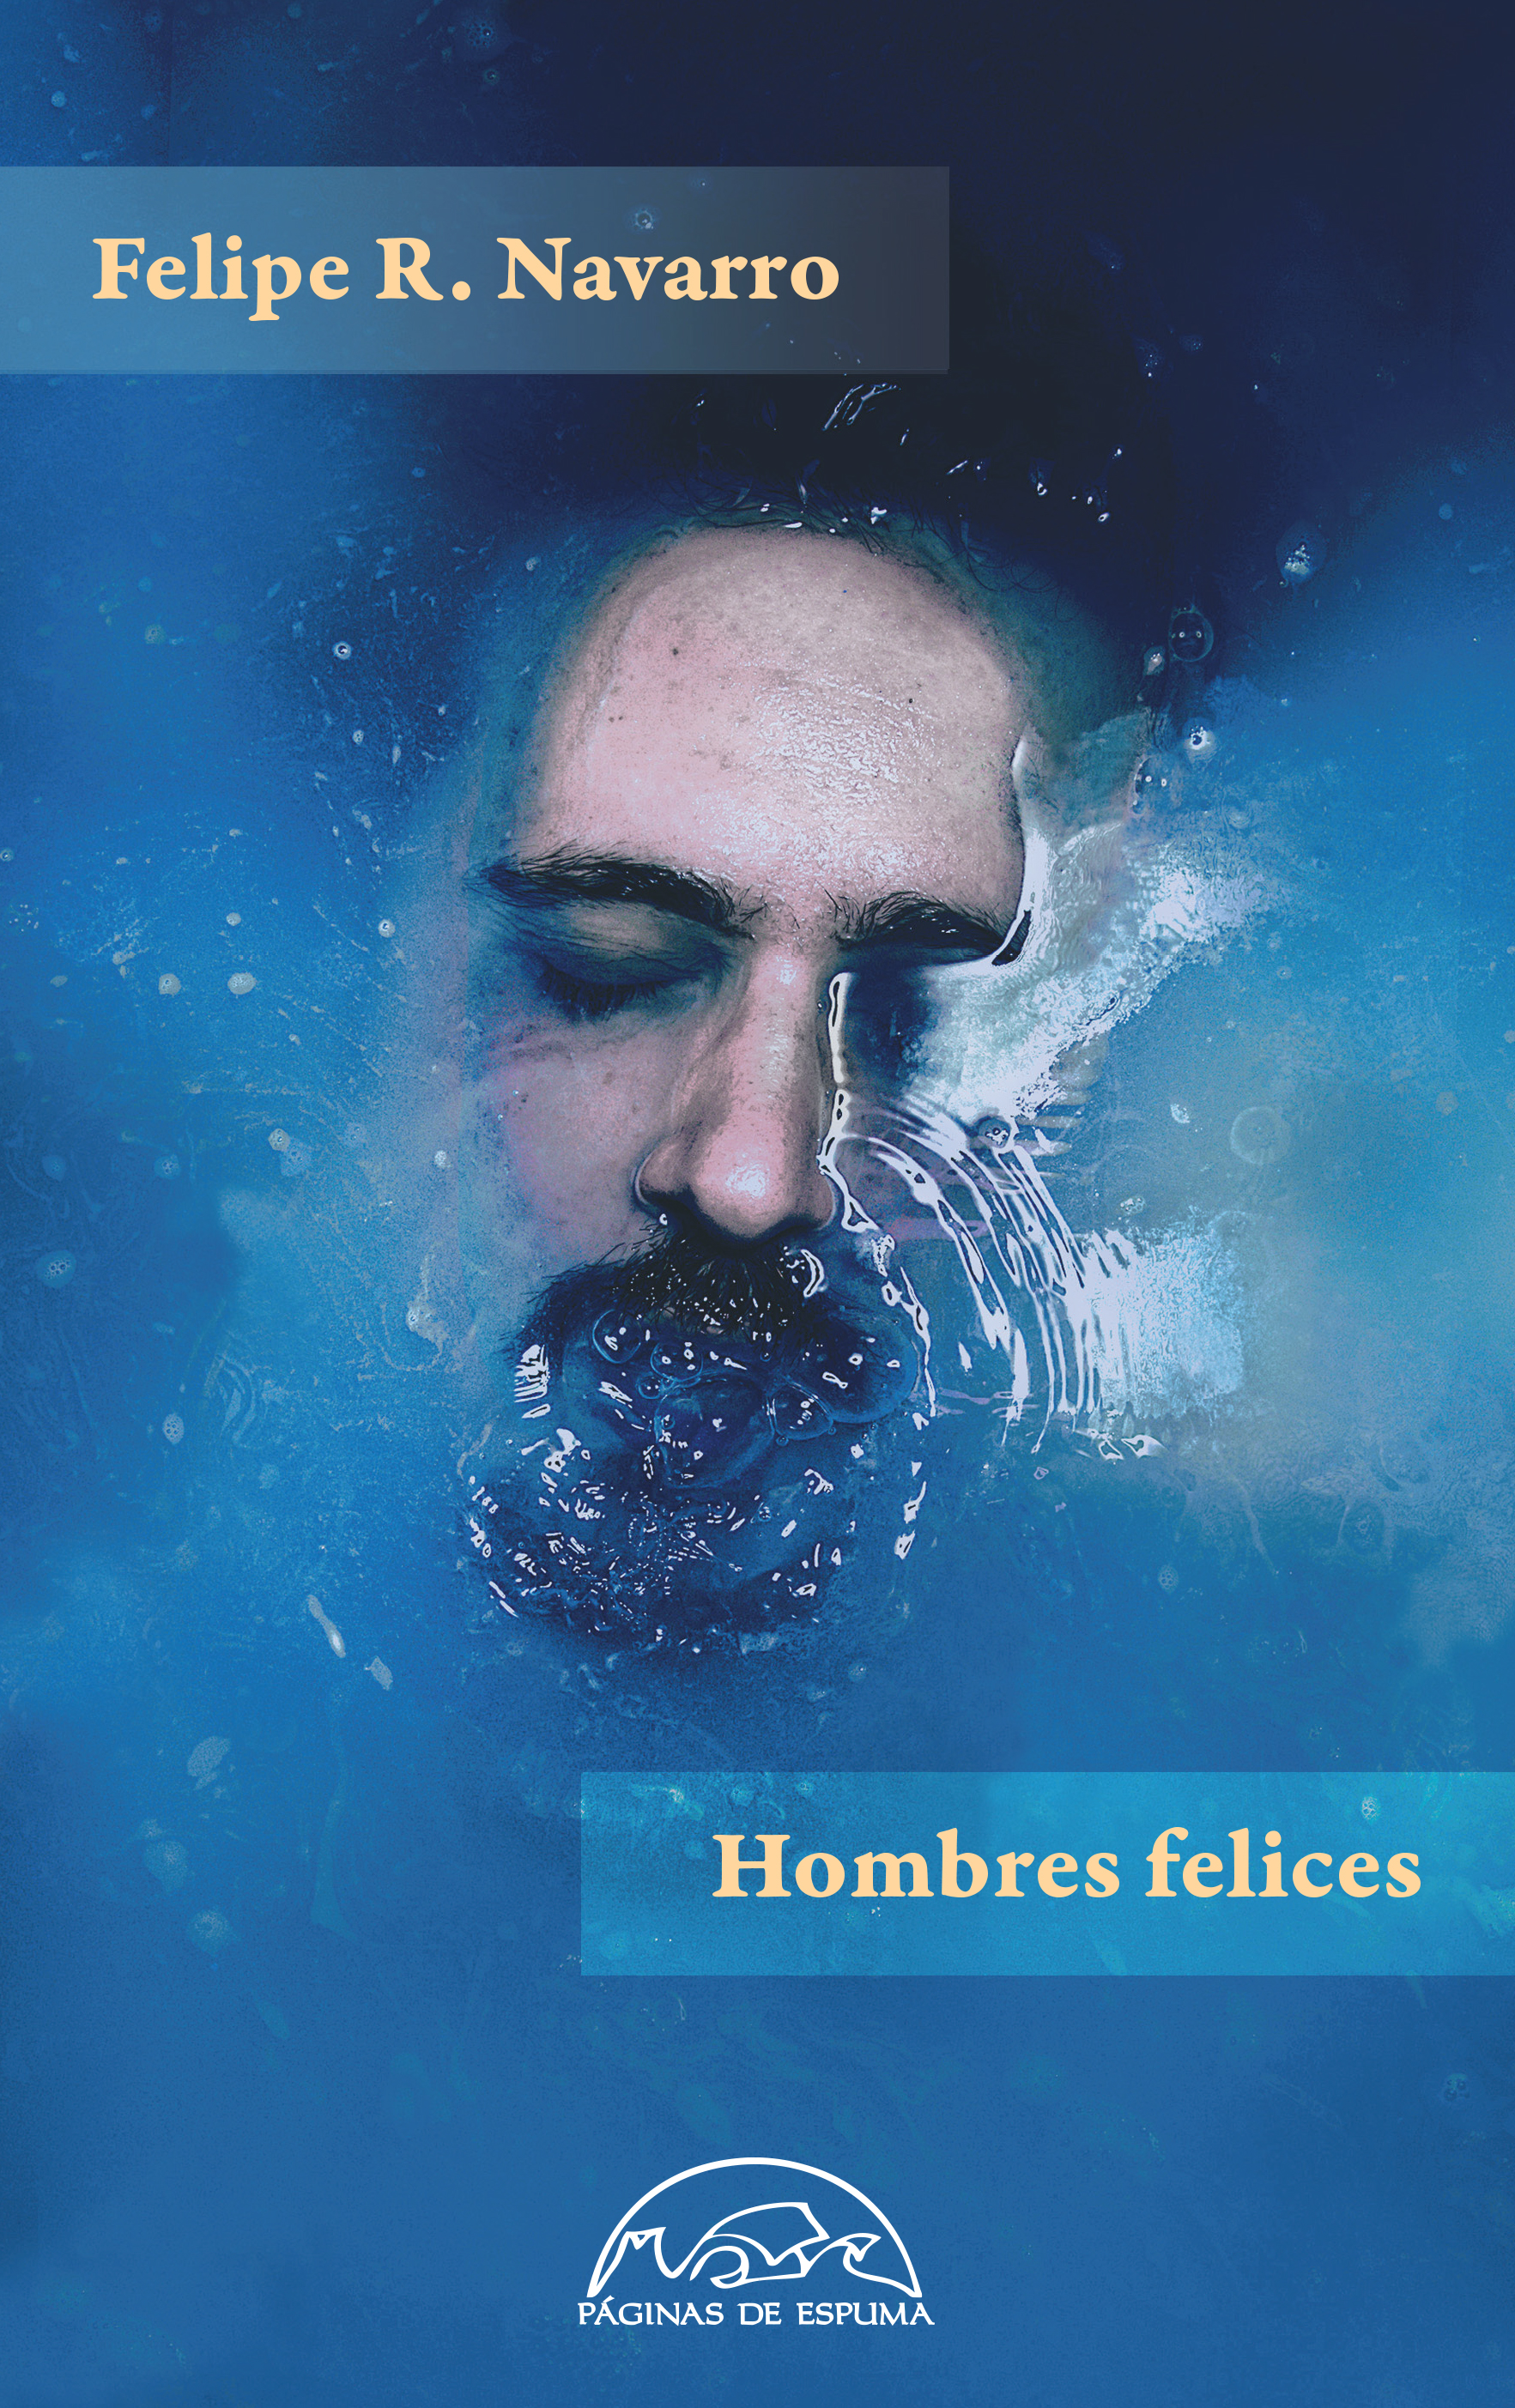 Скачать Hombres felices -  Felipe R. Navarro